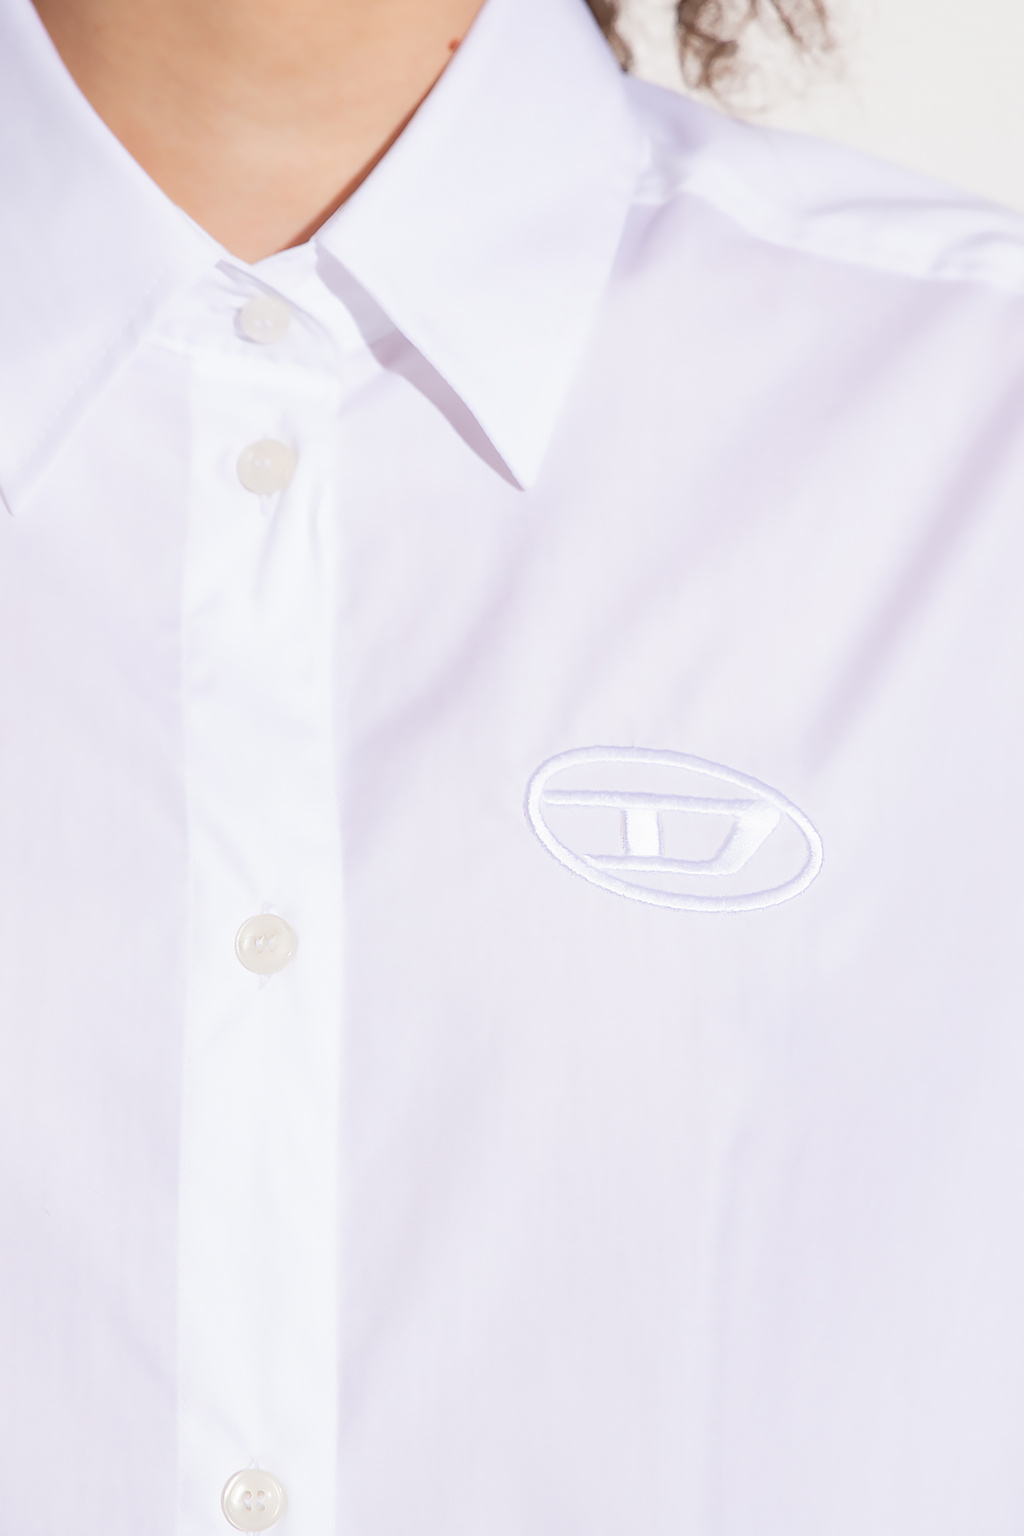 Diesel ‘D-LUNAR-B’ shirt dress